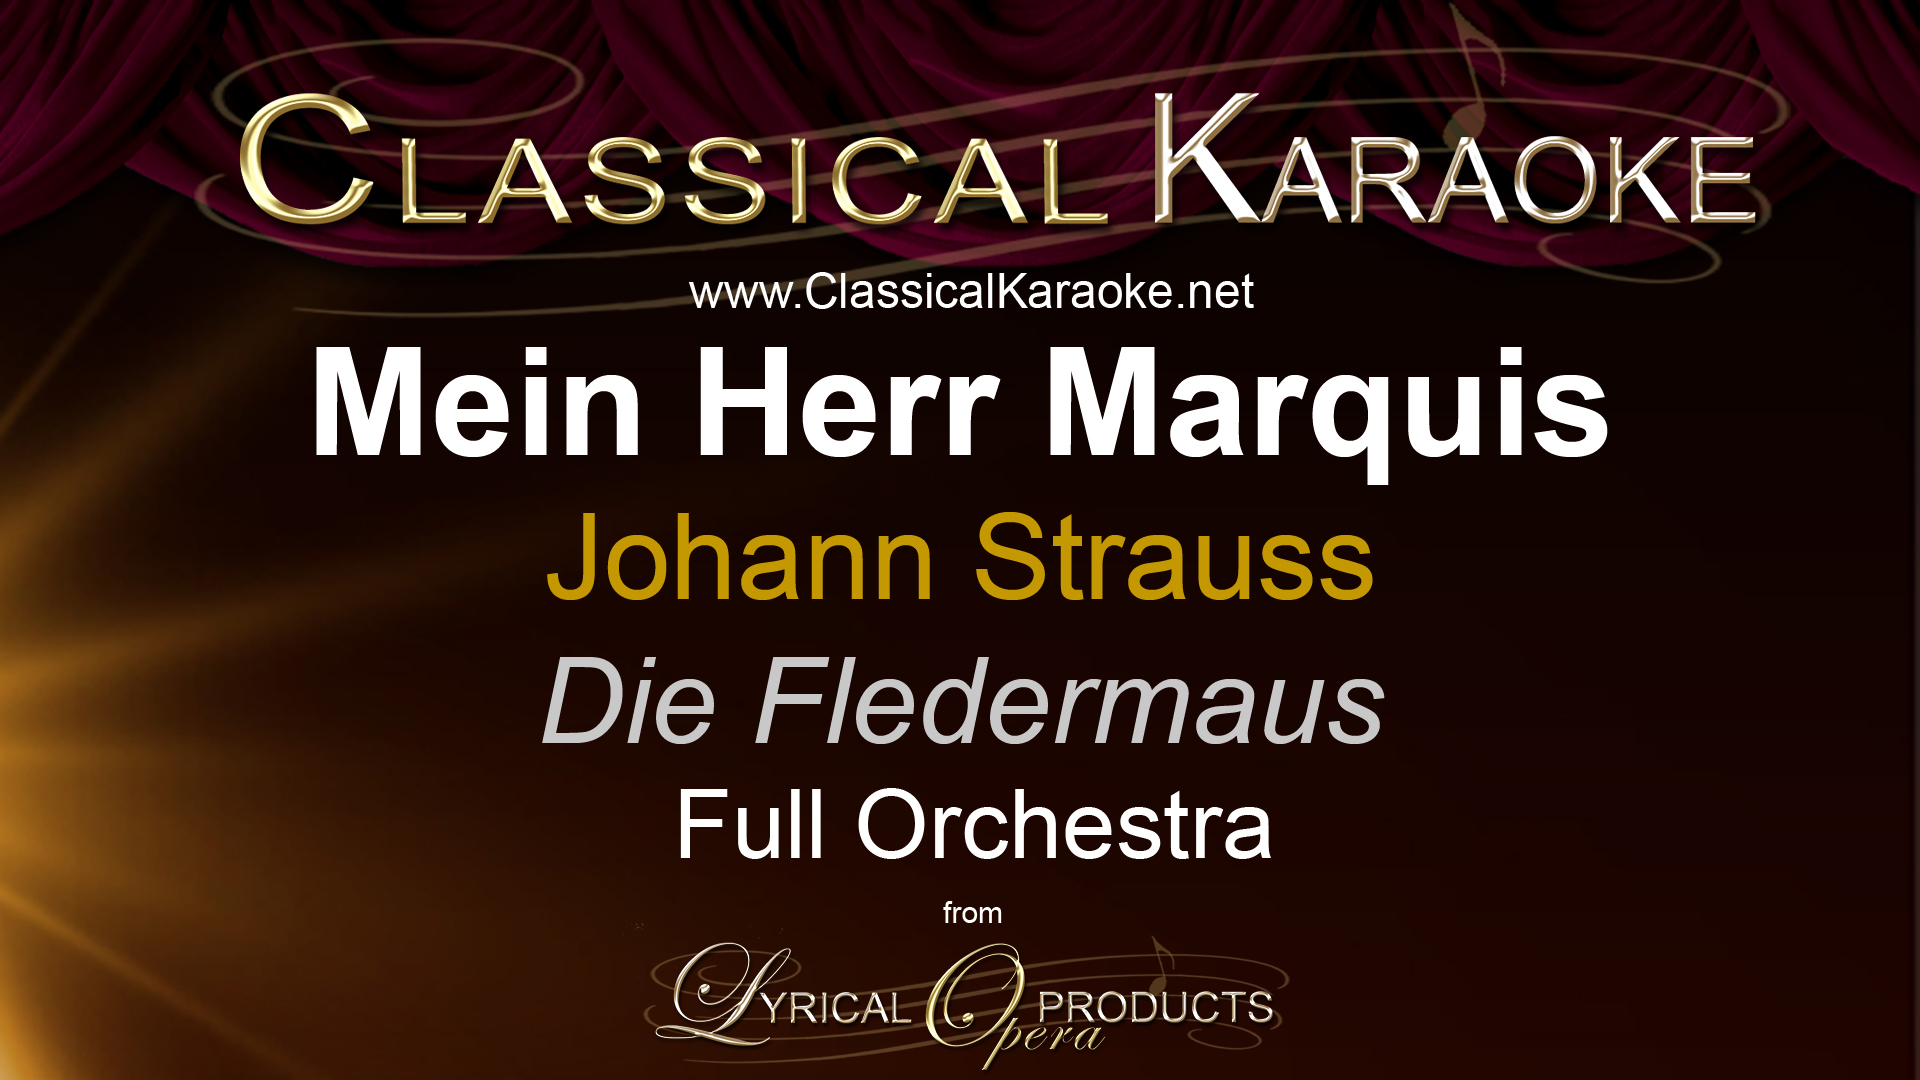 Mein Herr Marquis, Die Fledermaus, Johann Strauss, Full Orchestral Accompaniment (karaoke) track